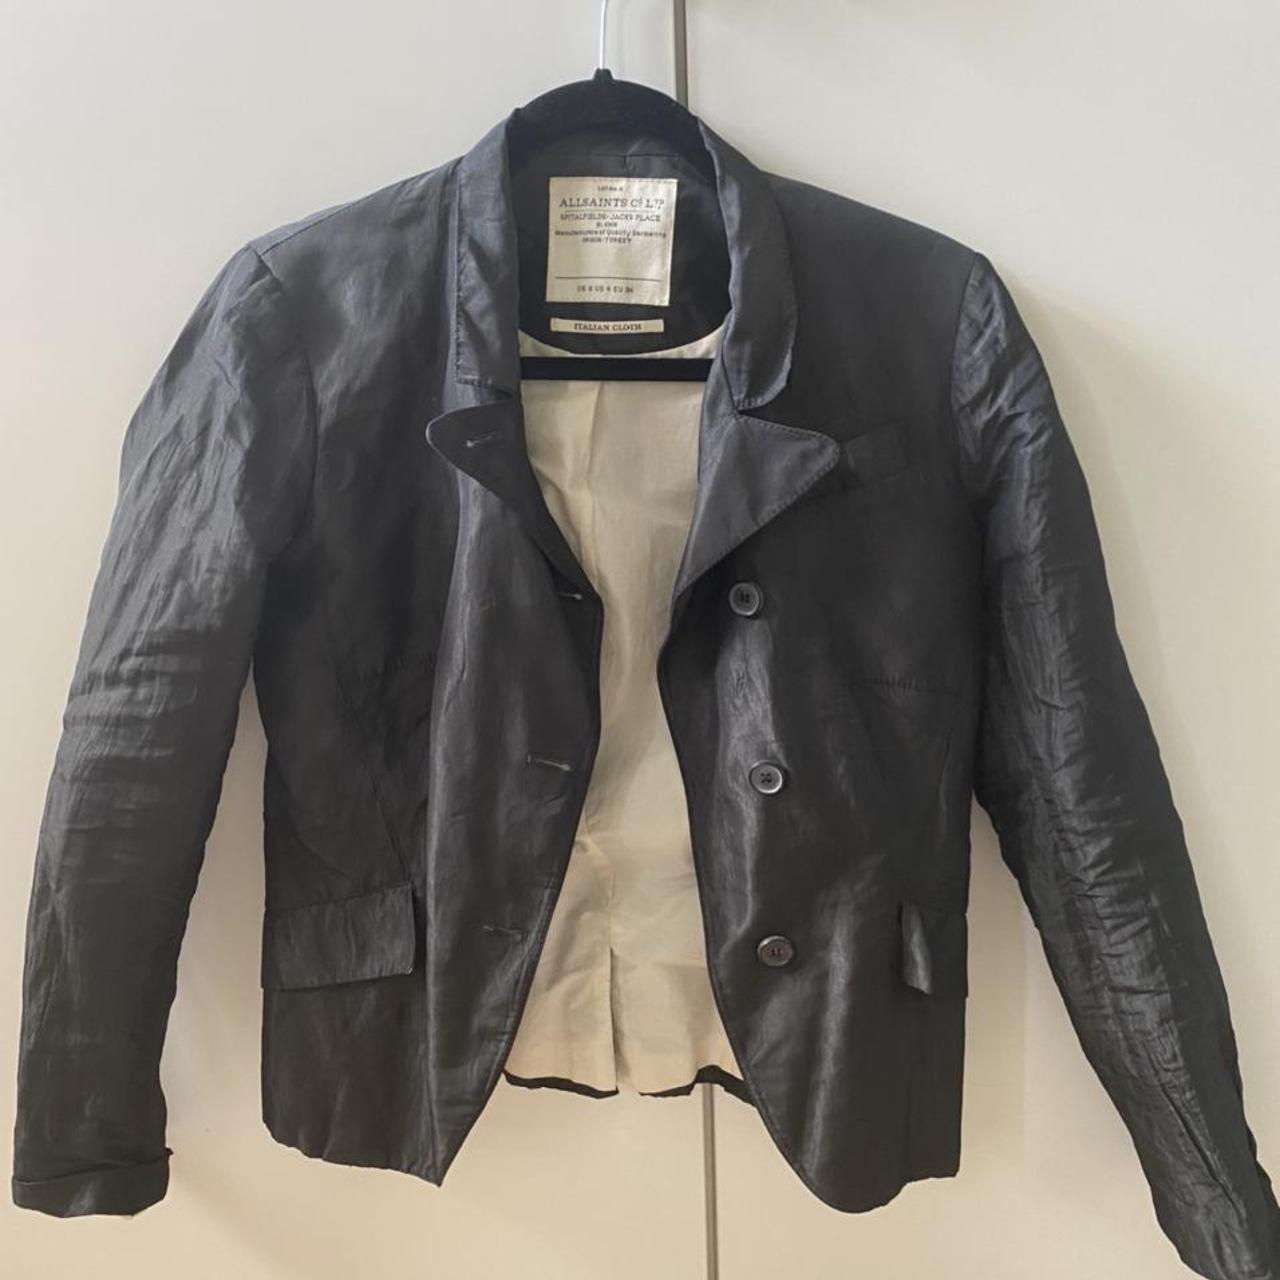 Stunning, vintage and 100% genuine AllSaints jacket... - Depop